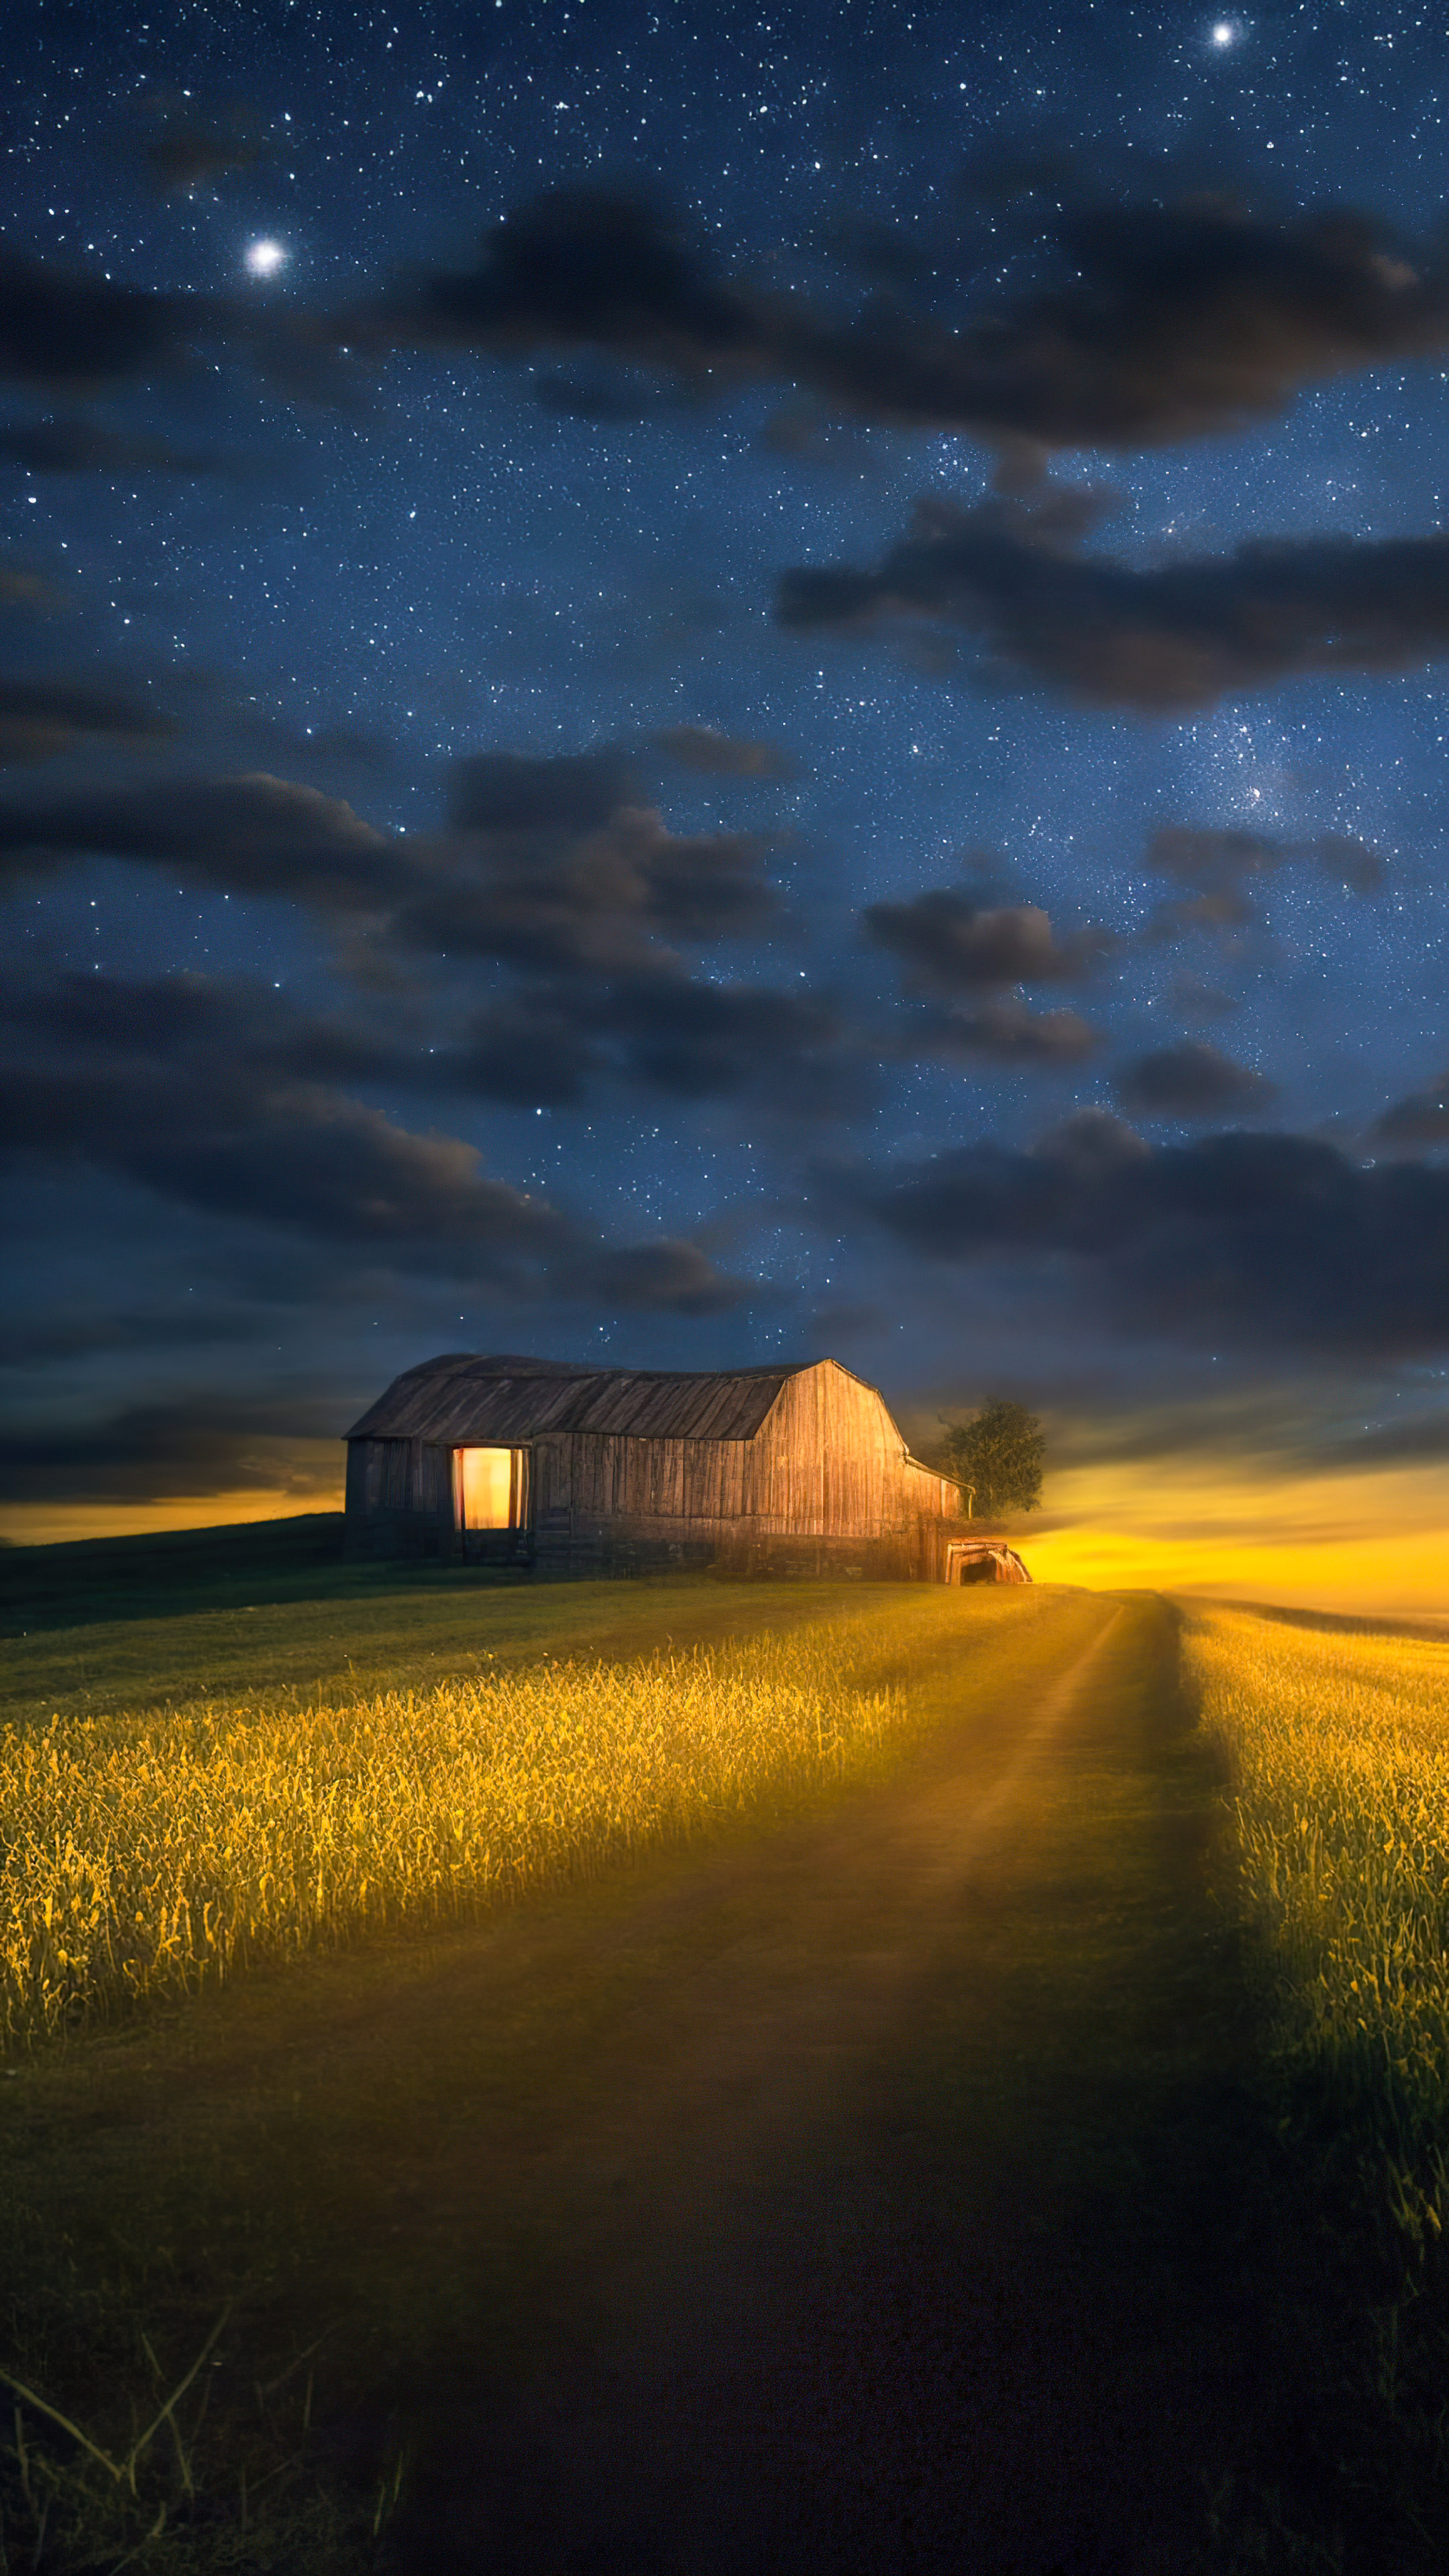 Le meilleur fond d'écran de paysages en 4K pour votre mobile vous attend, présentant une scène paisible de la campagne, une grange rustique, des lucioles, et un ciel clair et étoilé.